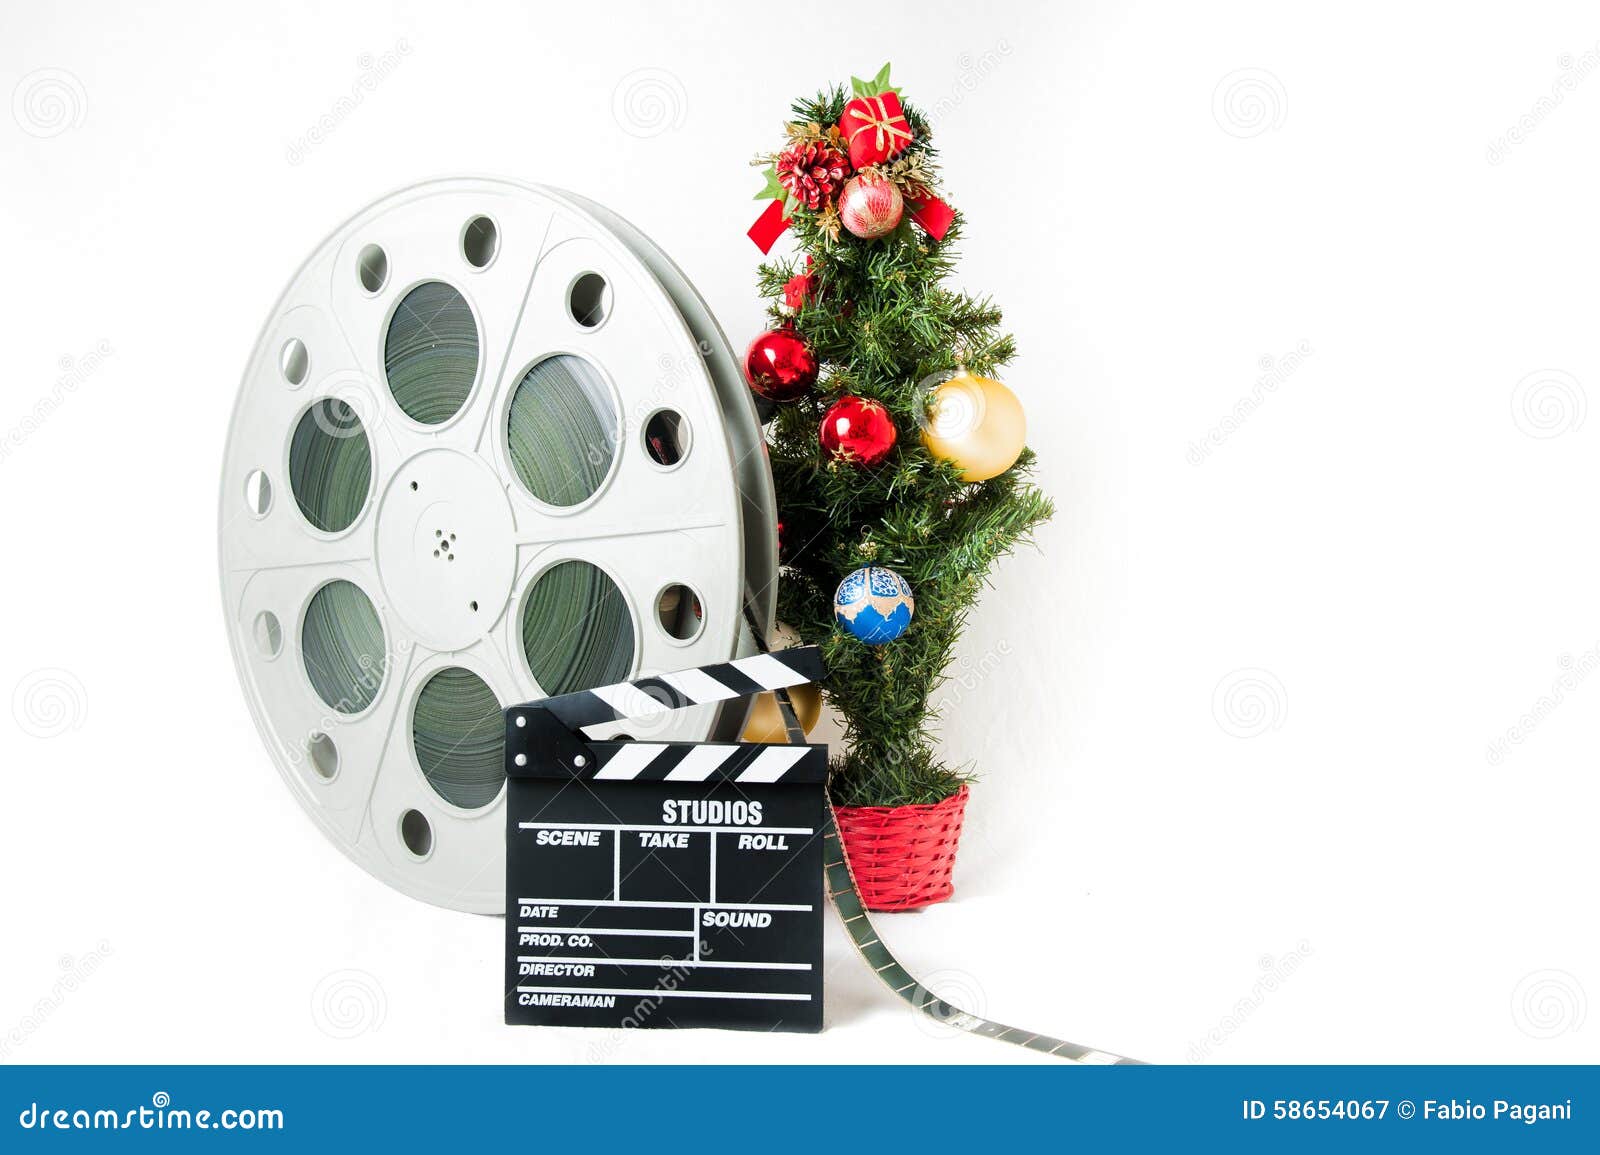 L Albero Di Natale Film.Film Di Natale Immagine Stock Immagine Di Pellicola 58654067